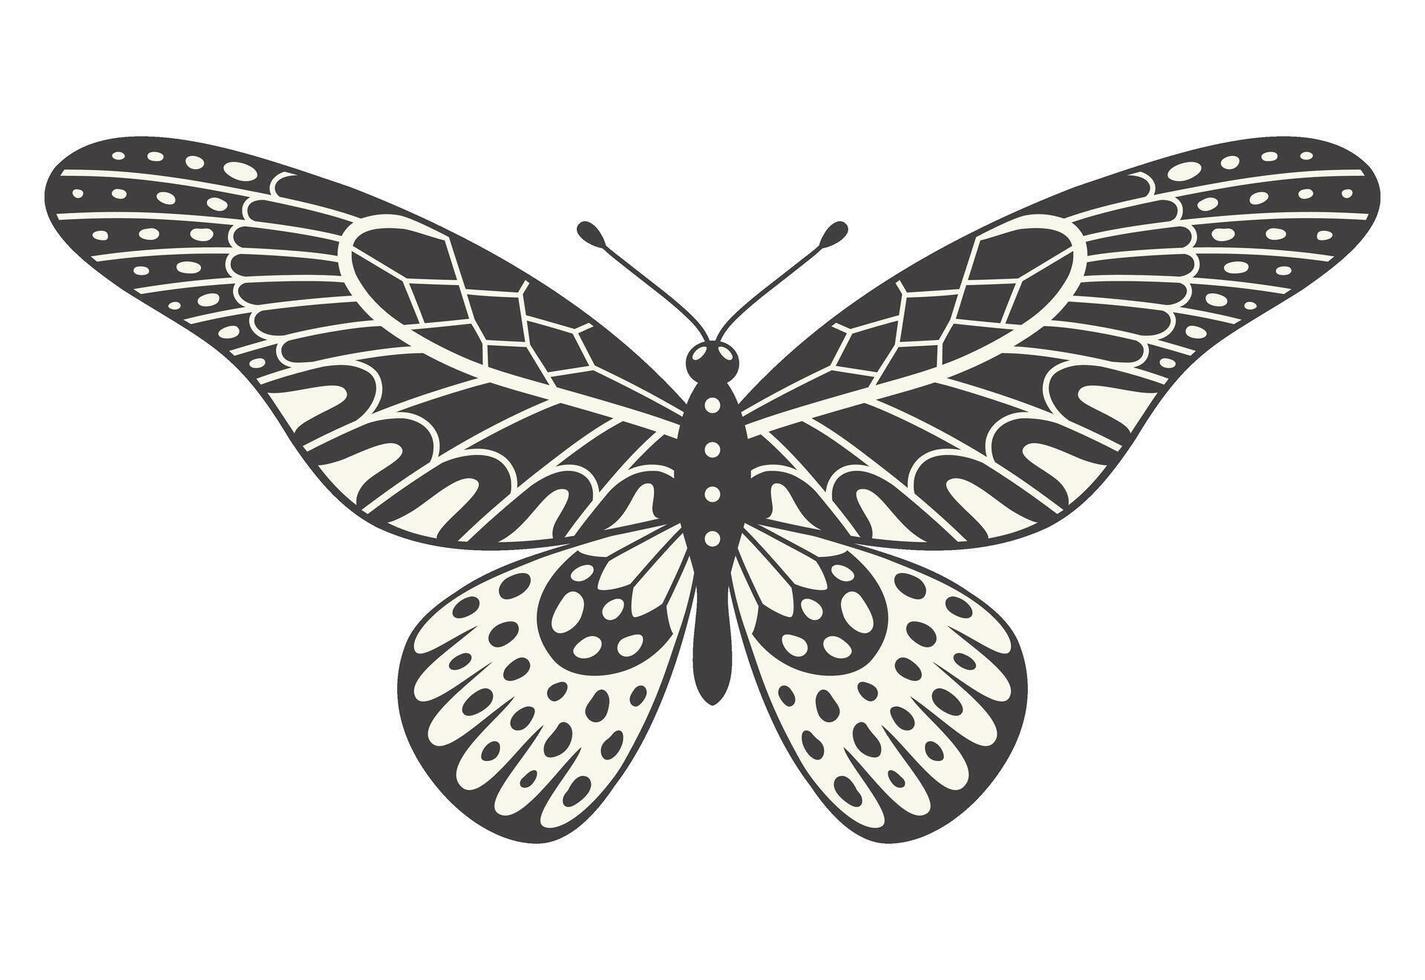 fjäril illustration, vektor. y2k stil estetisk, vinge former i främre se, en magi dekorativ symbol. svart och vit element, tatuering grafisk skriva ut med abstrakt mönster vektor